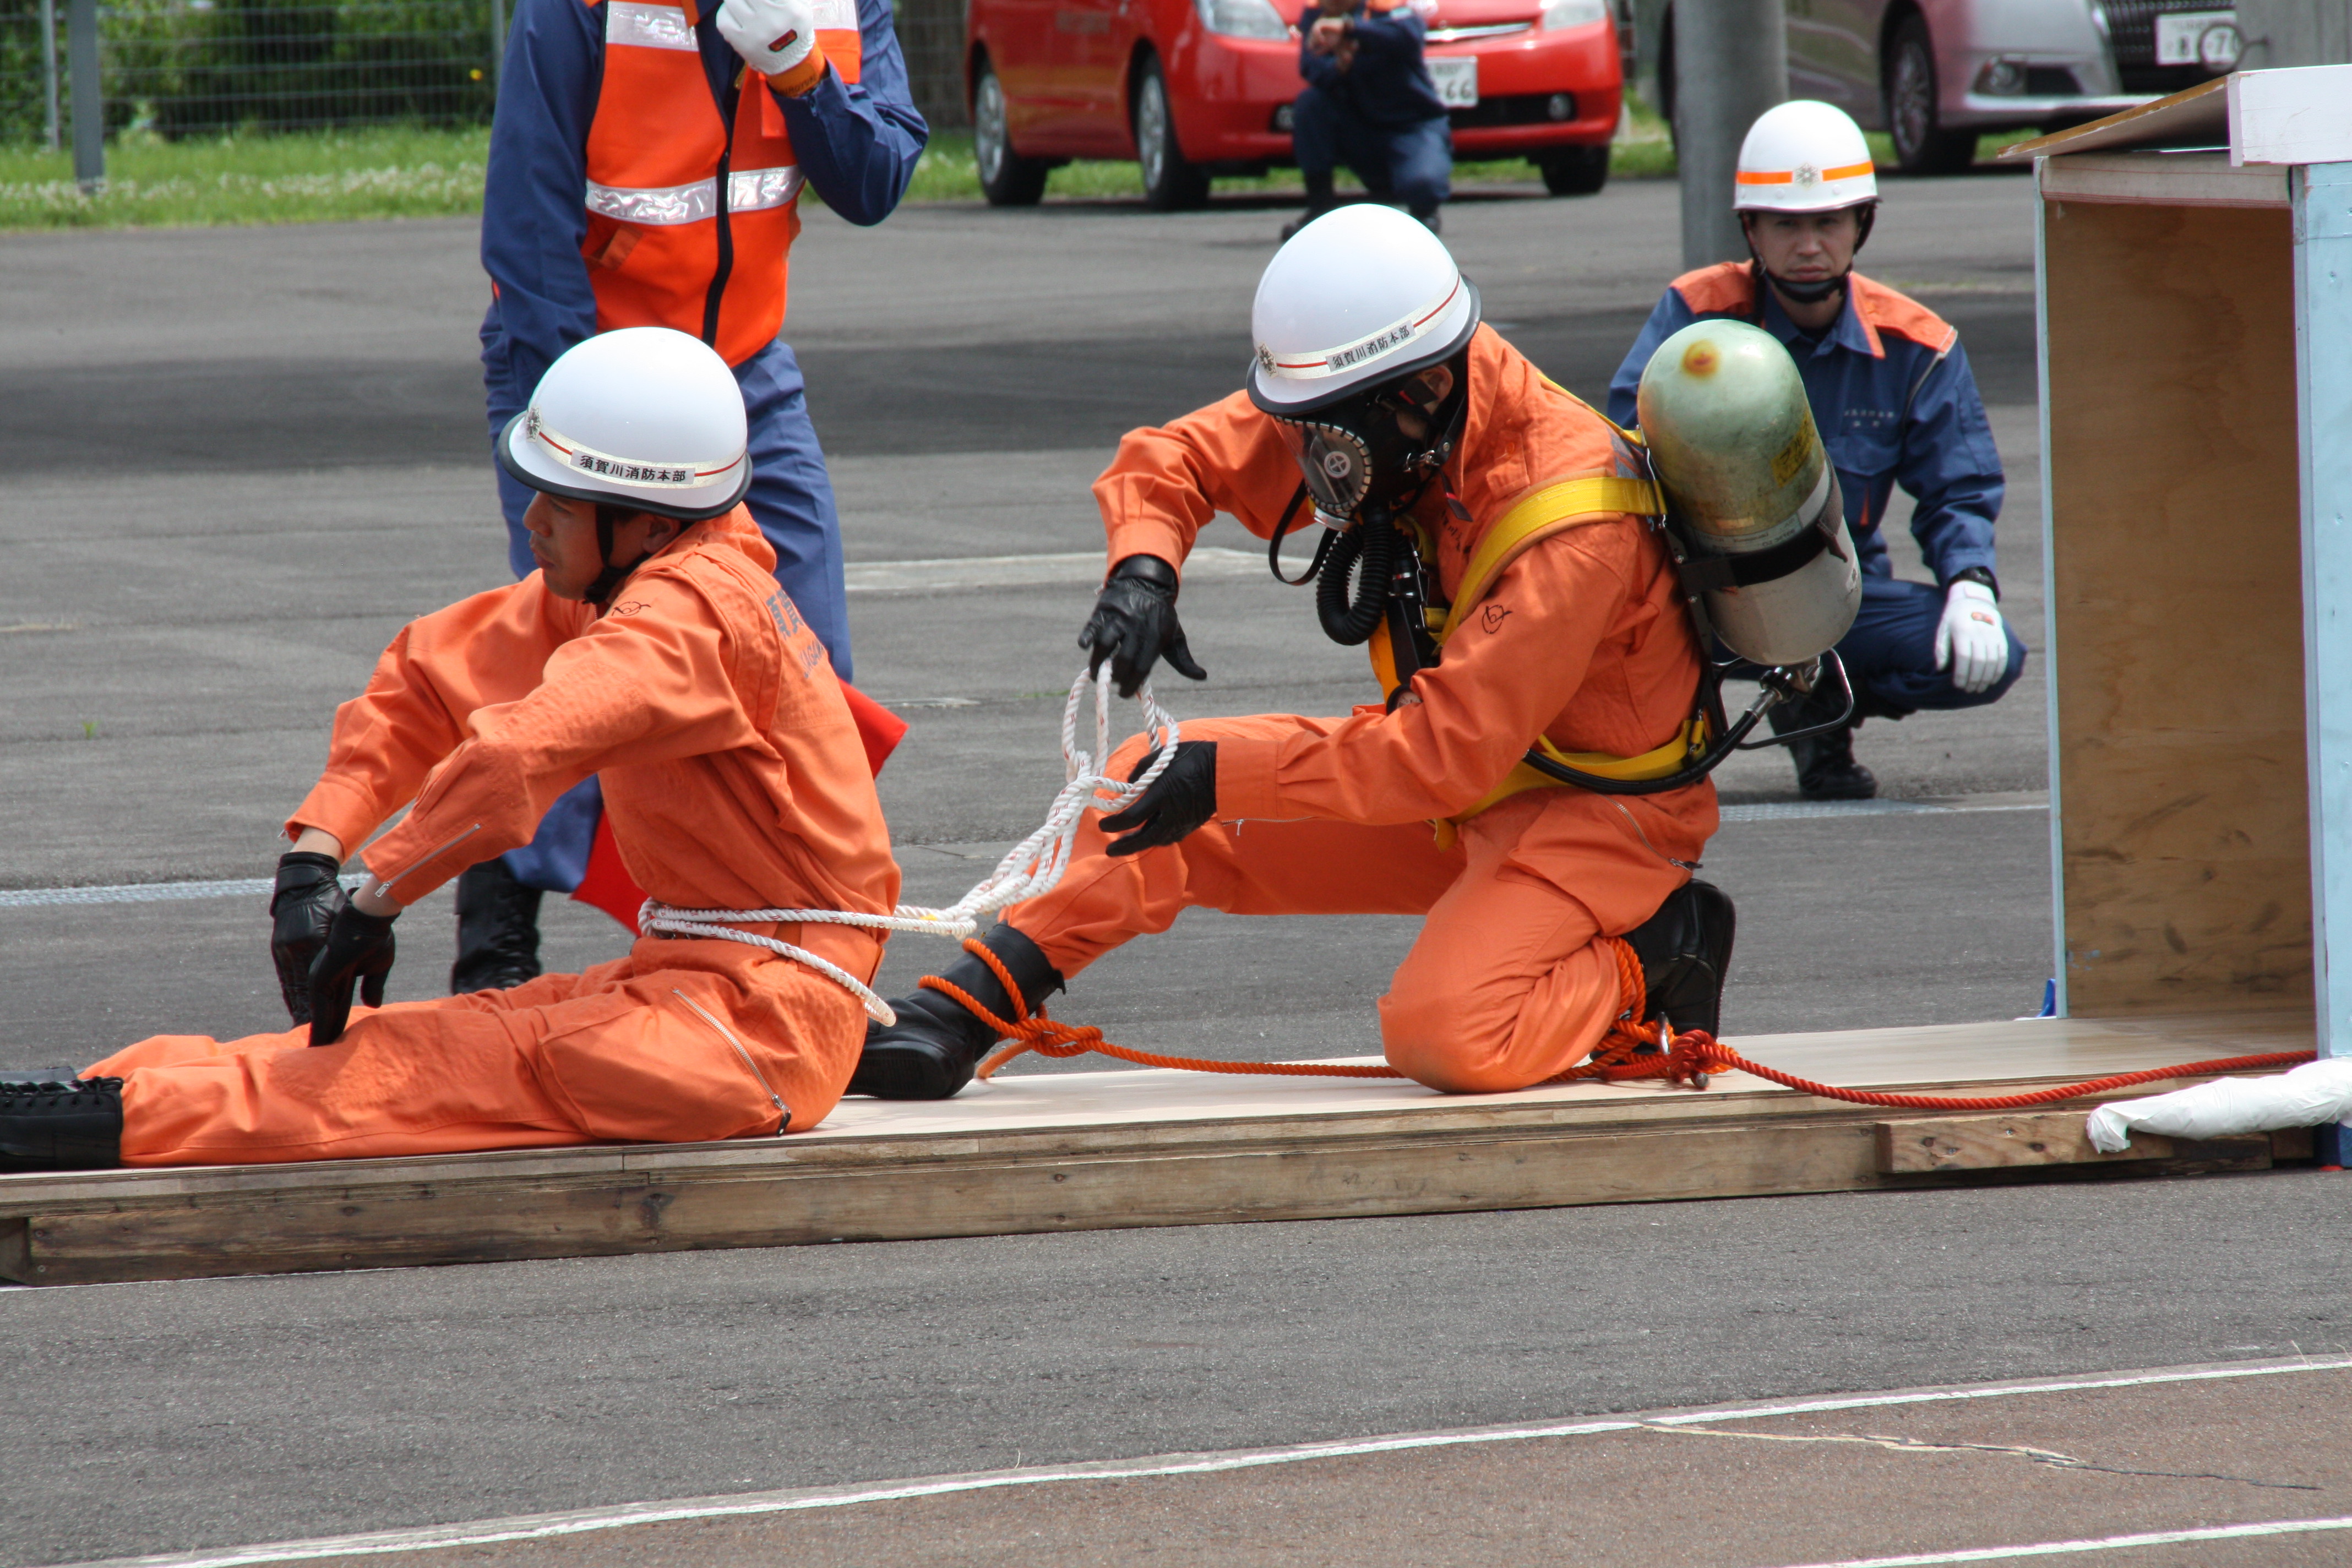 札幌 全国消防救助技術大会セット こうのとり付-